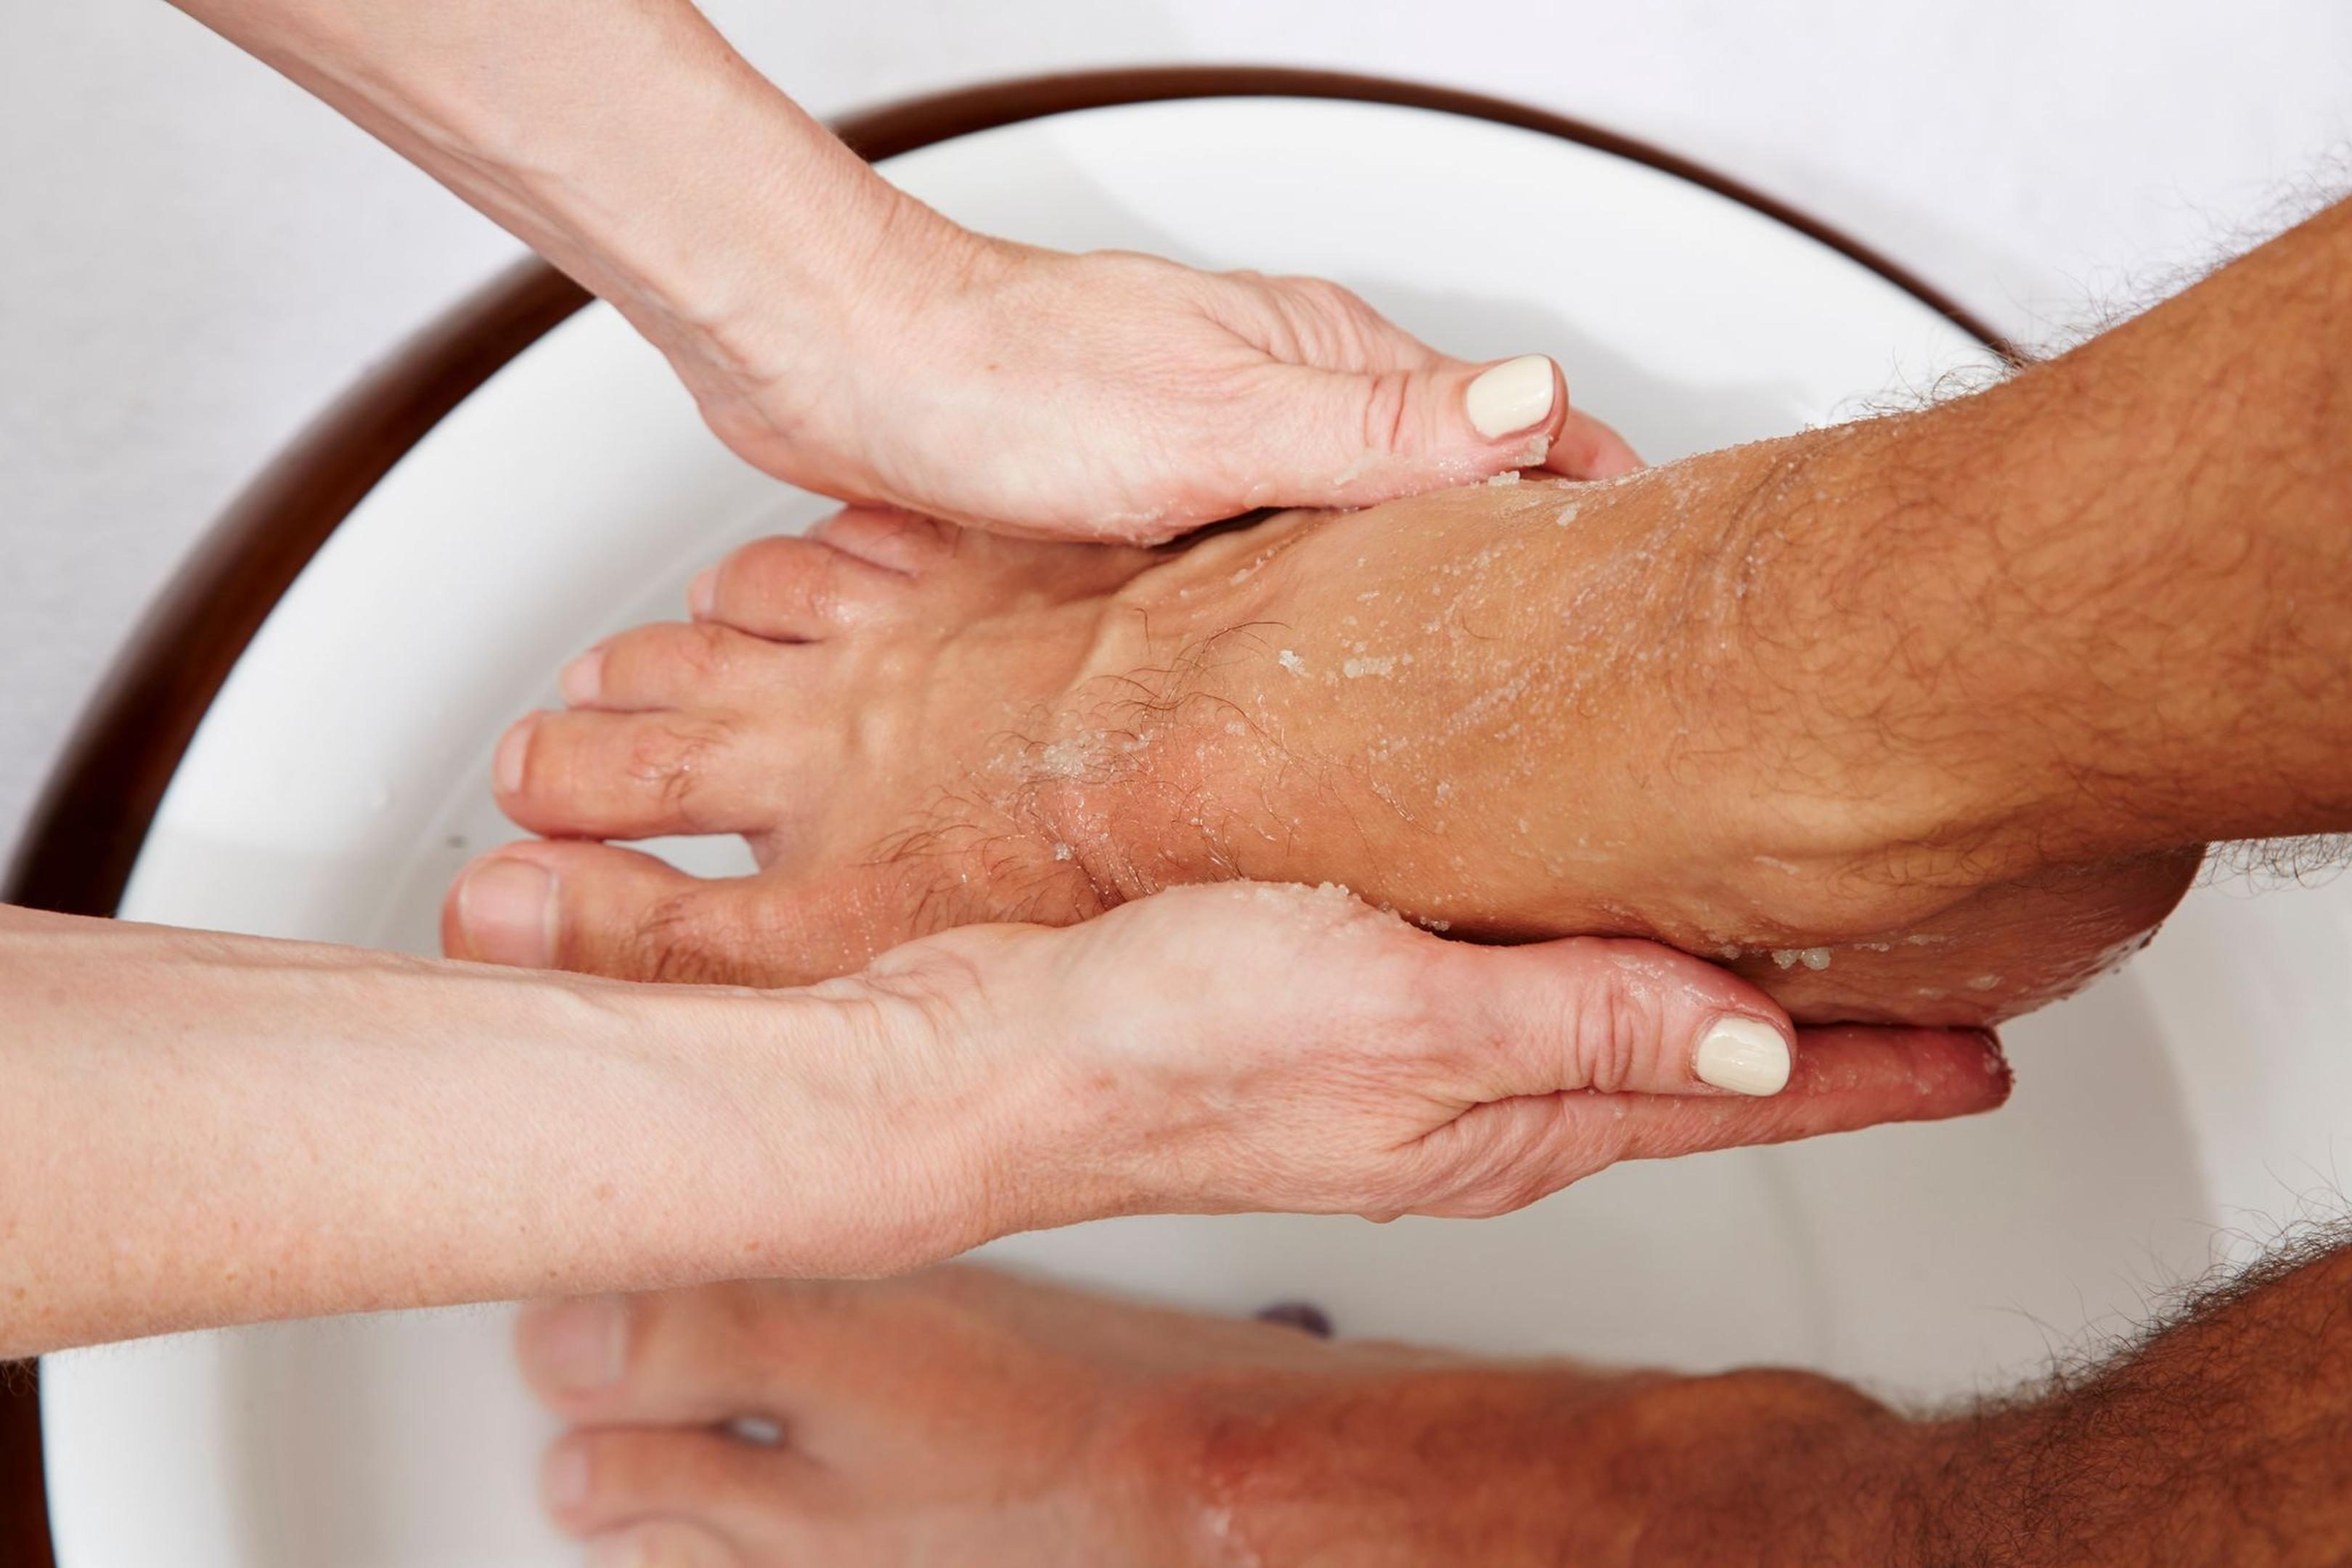 Verständnis und Geduld: Wer einen pflegebedürftigen Menschen wäscht, sollte beides mitbringen.